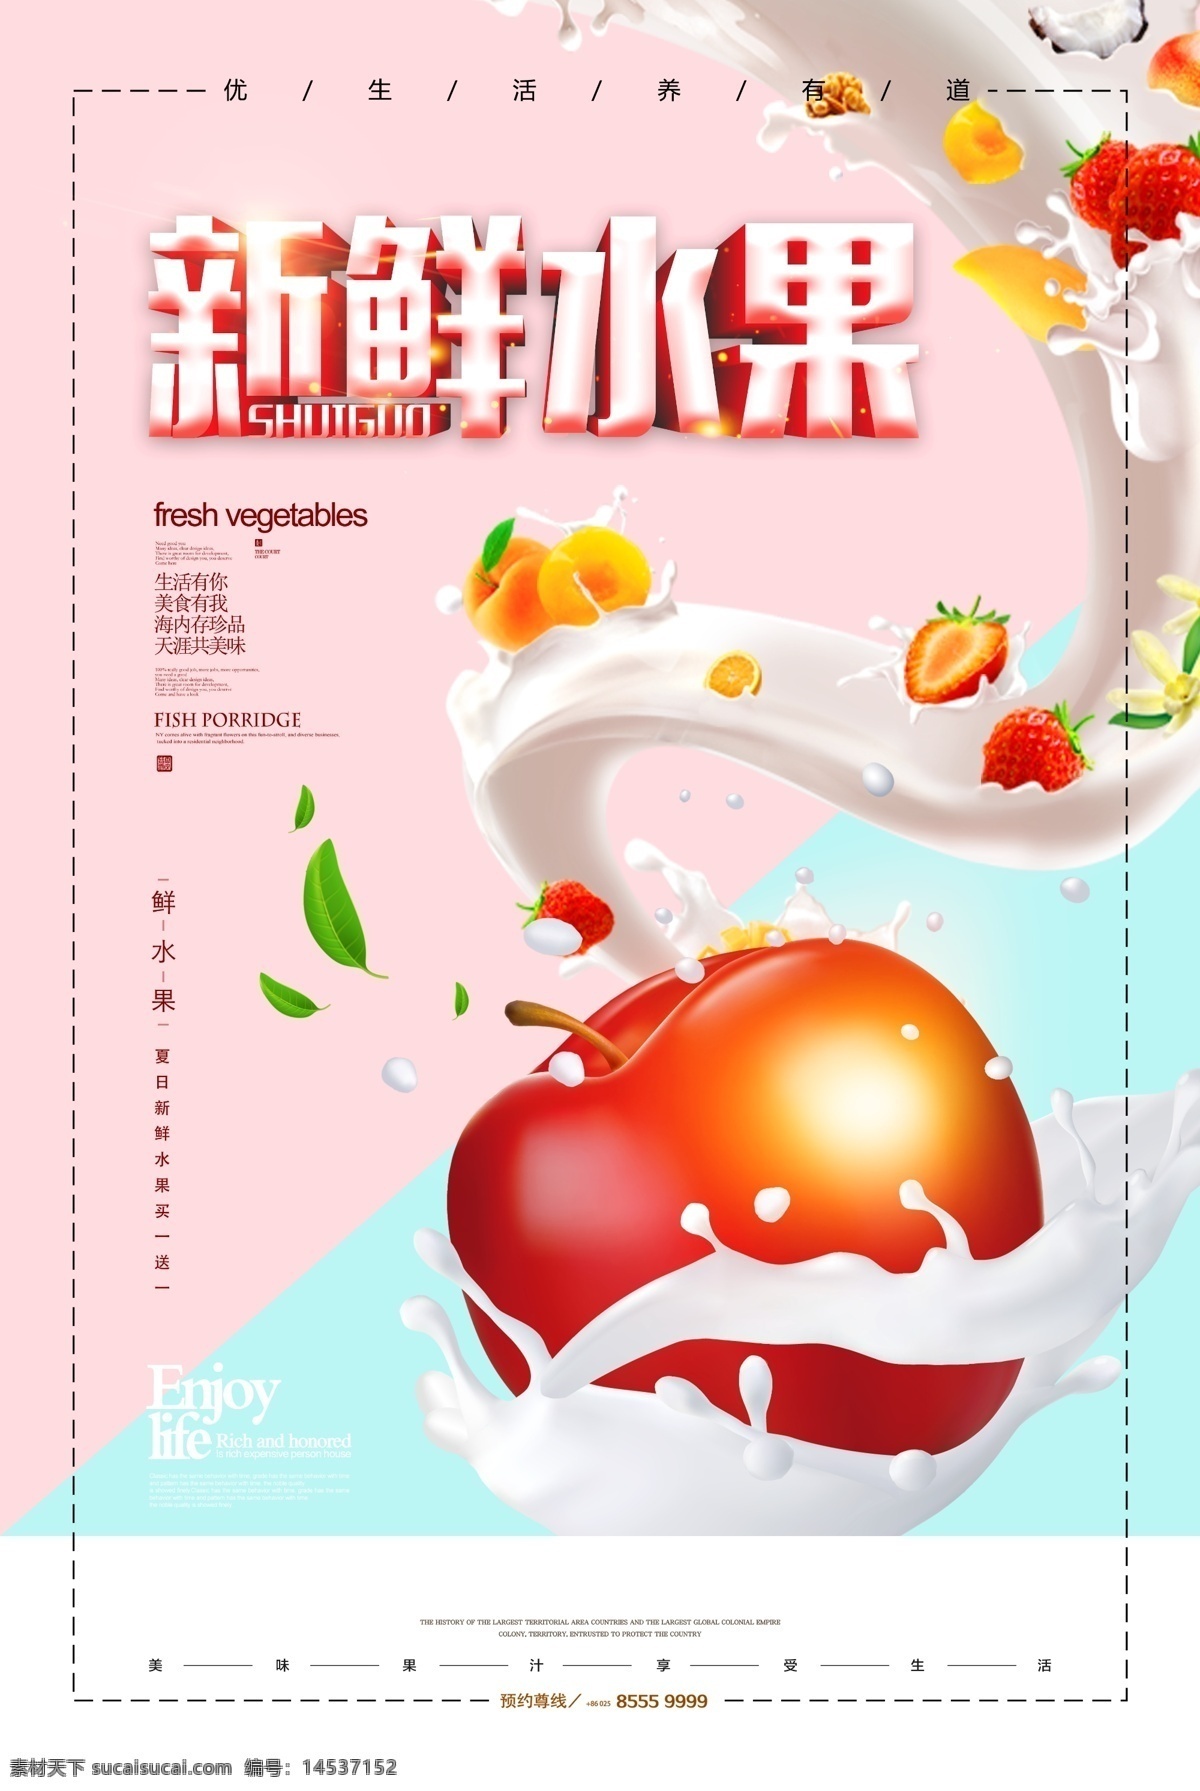 苹果图片 苹果 蛇果 糖心 红富士 青苹果 水果 海报